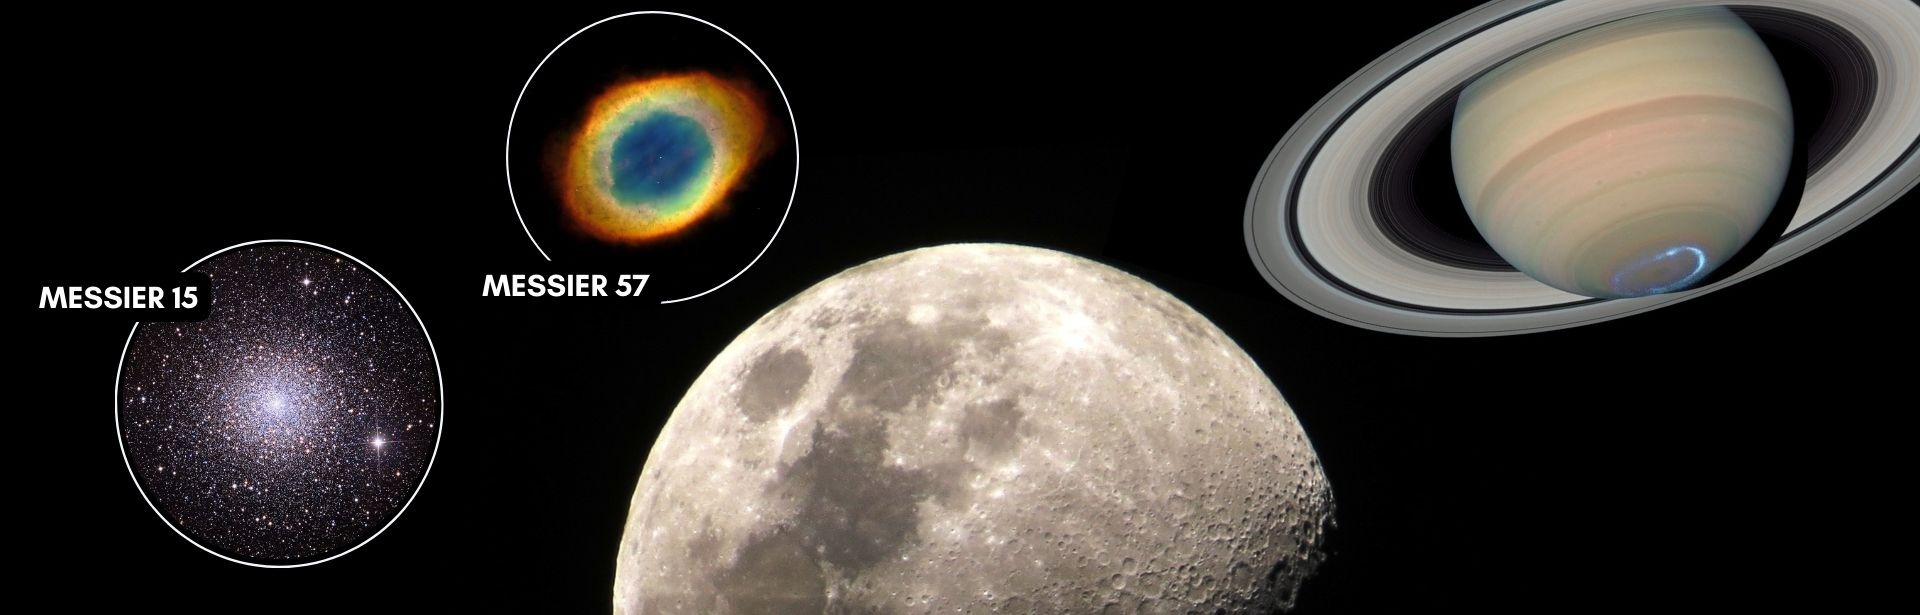 Az őszi Hold krátercsodája és a Szaturnusz gyűrűje - 09.23. 